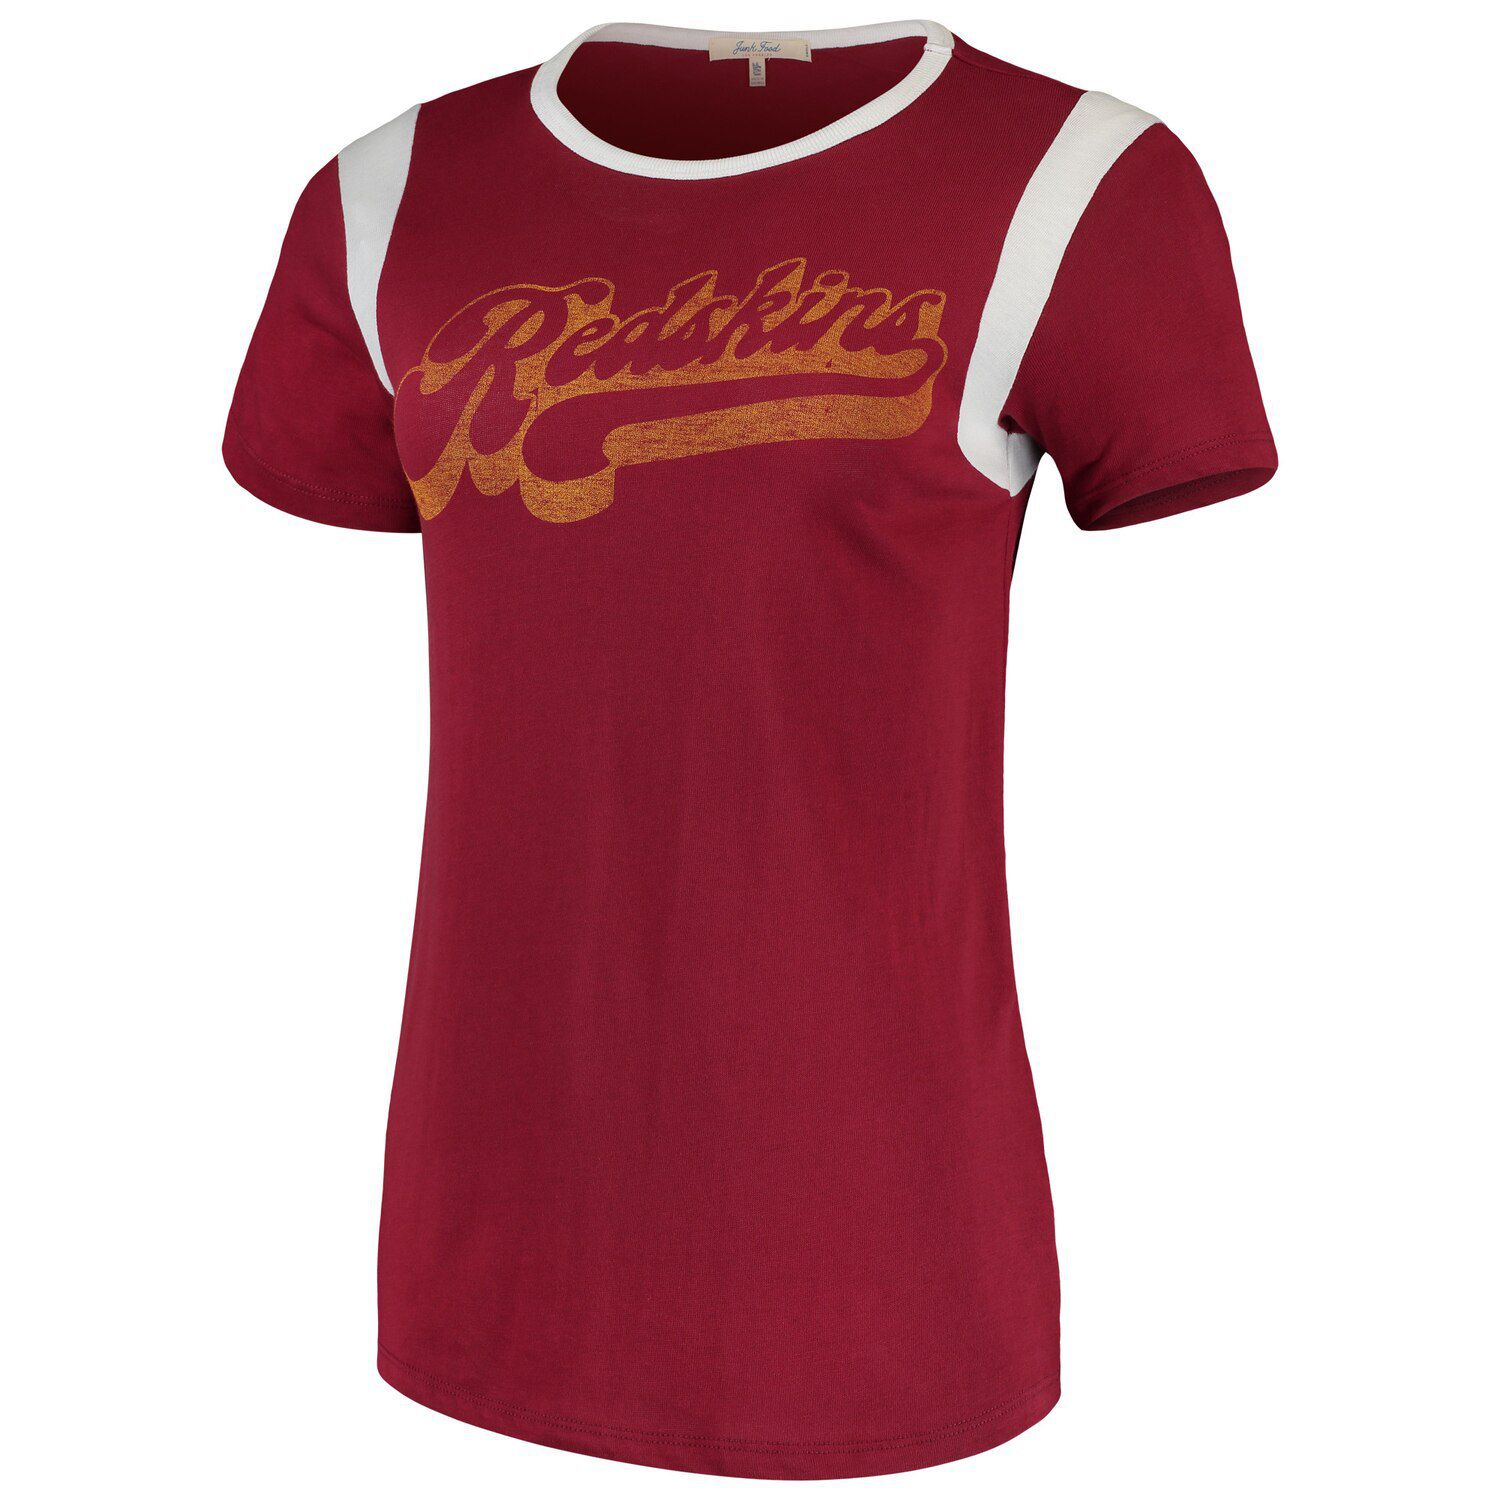 retro redskins shirt